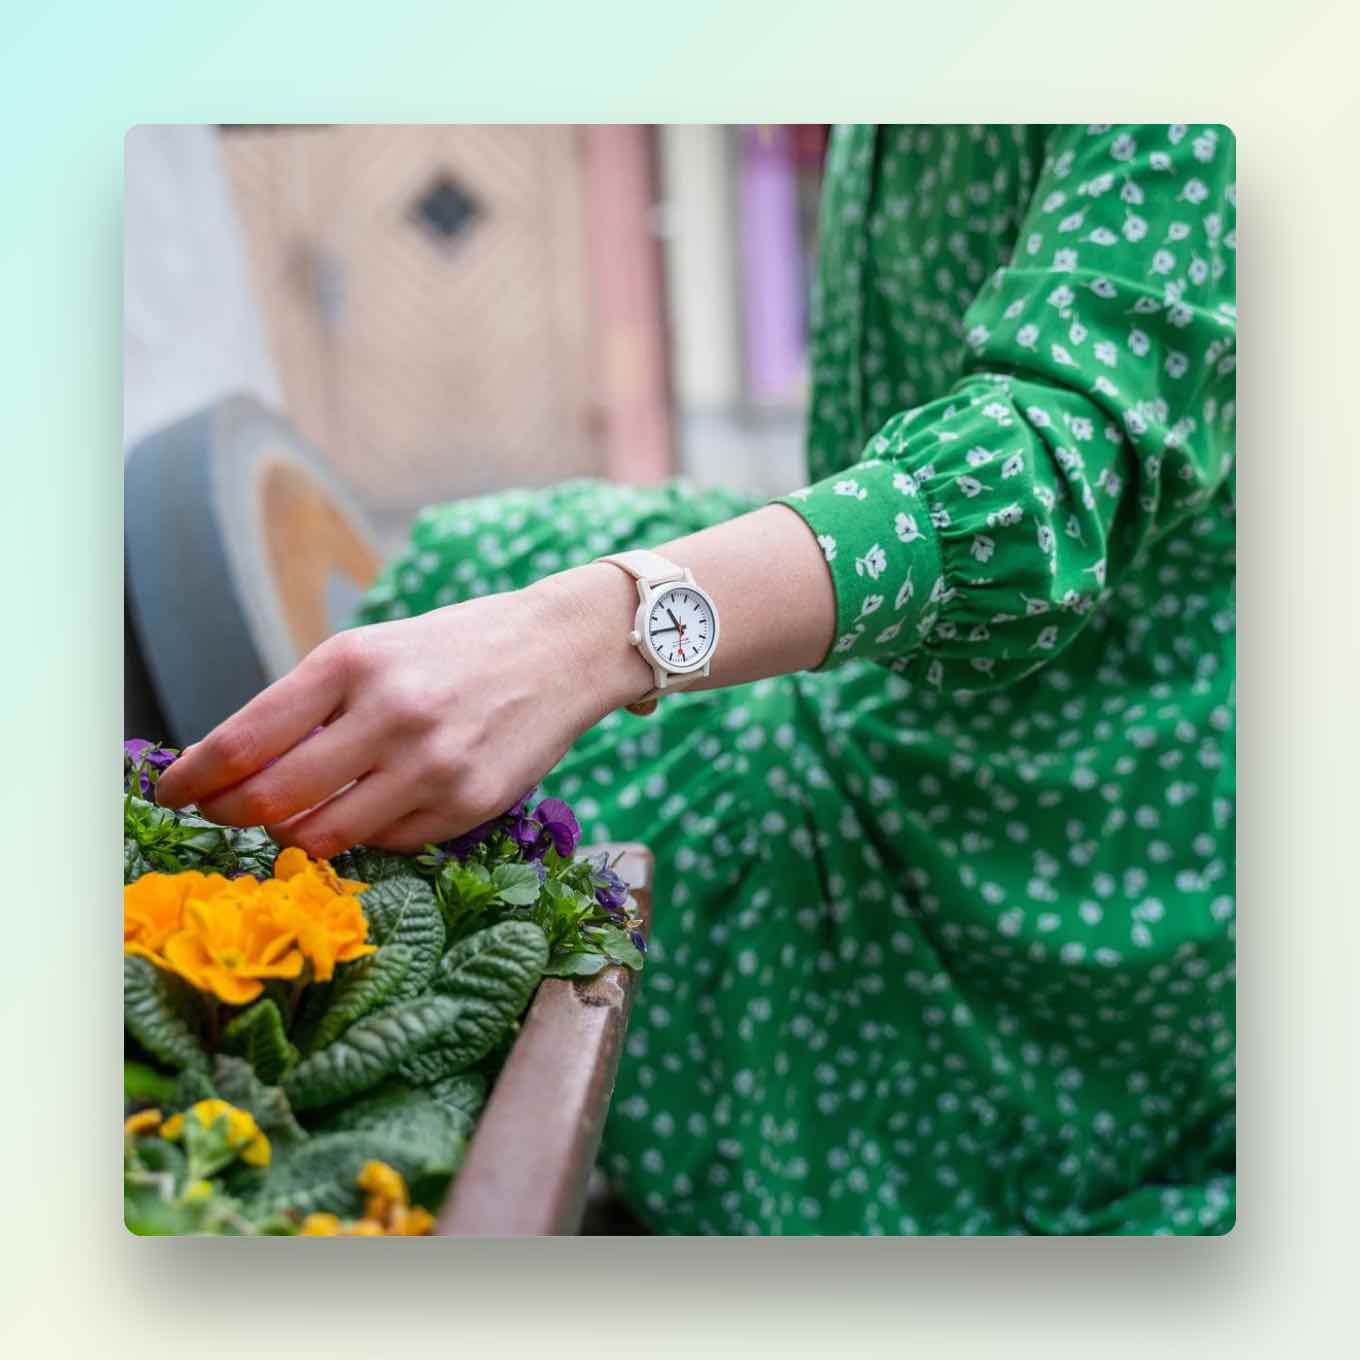 Vrouw die milieuvriendelijk horloge draagt tijdens het tuinieren in een groene jurk